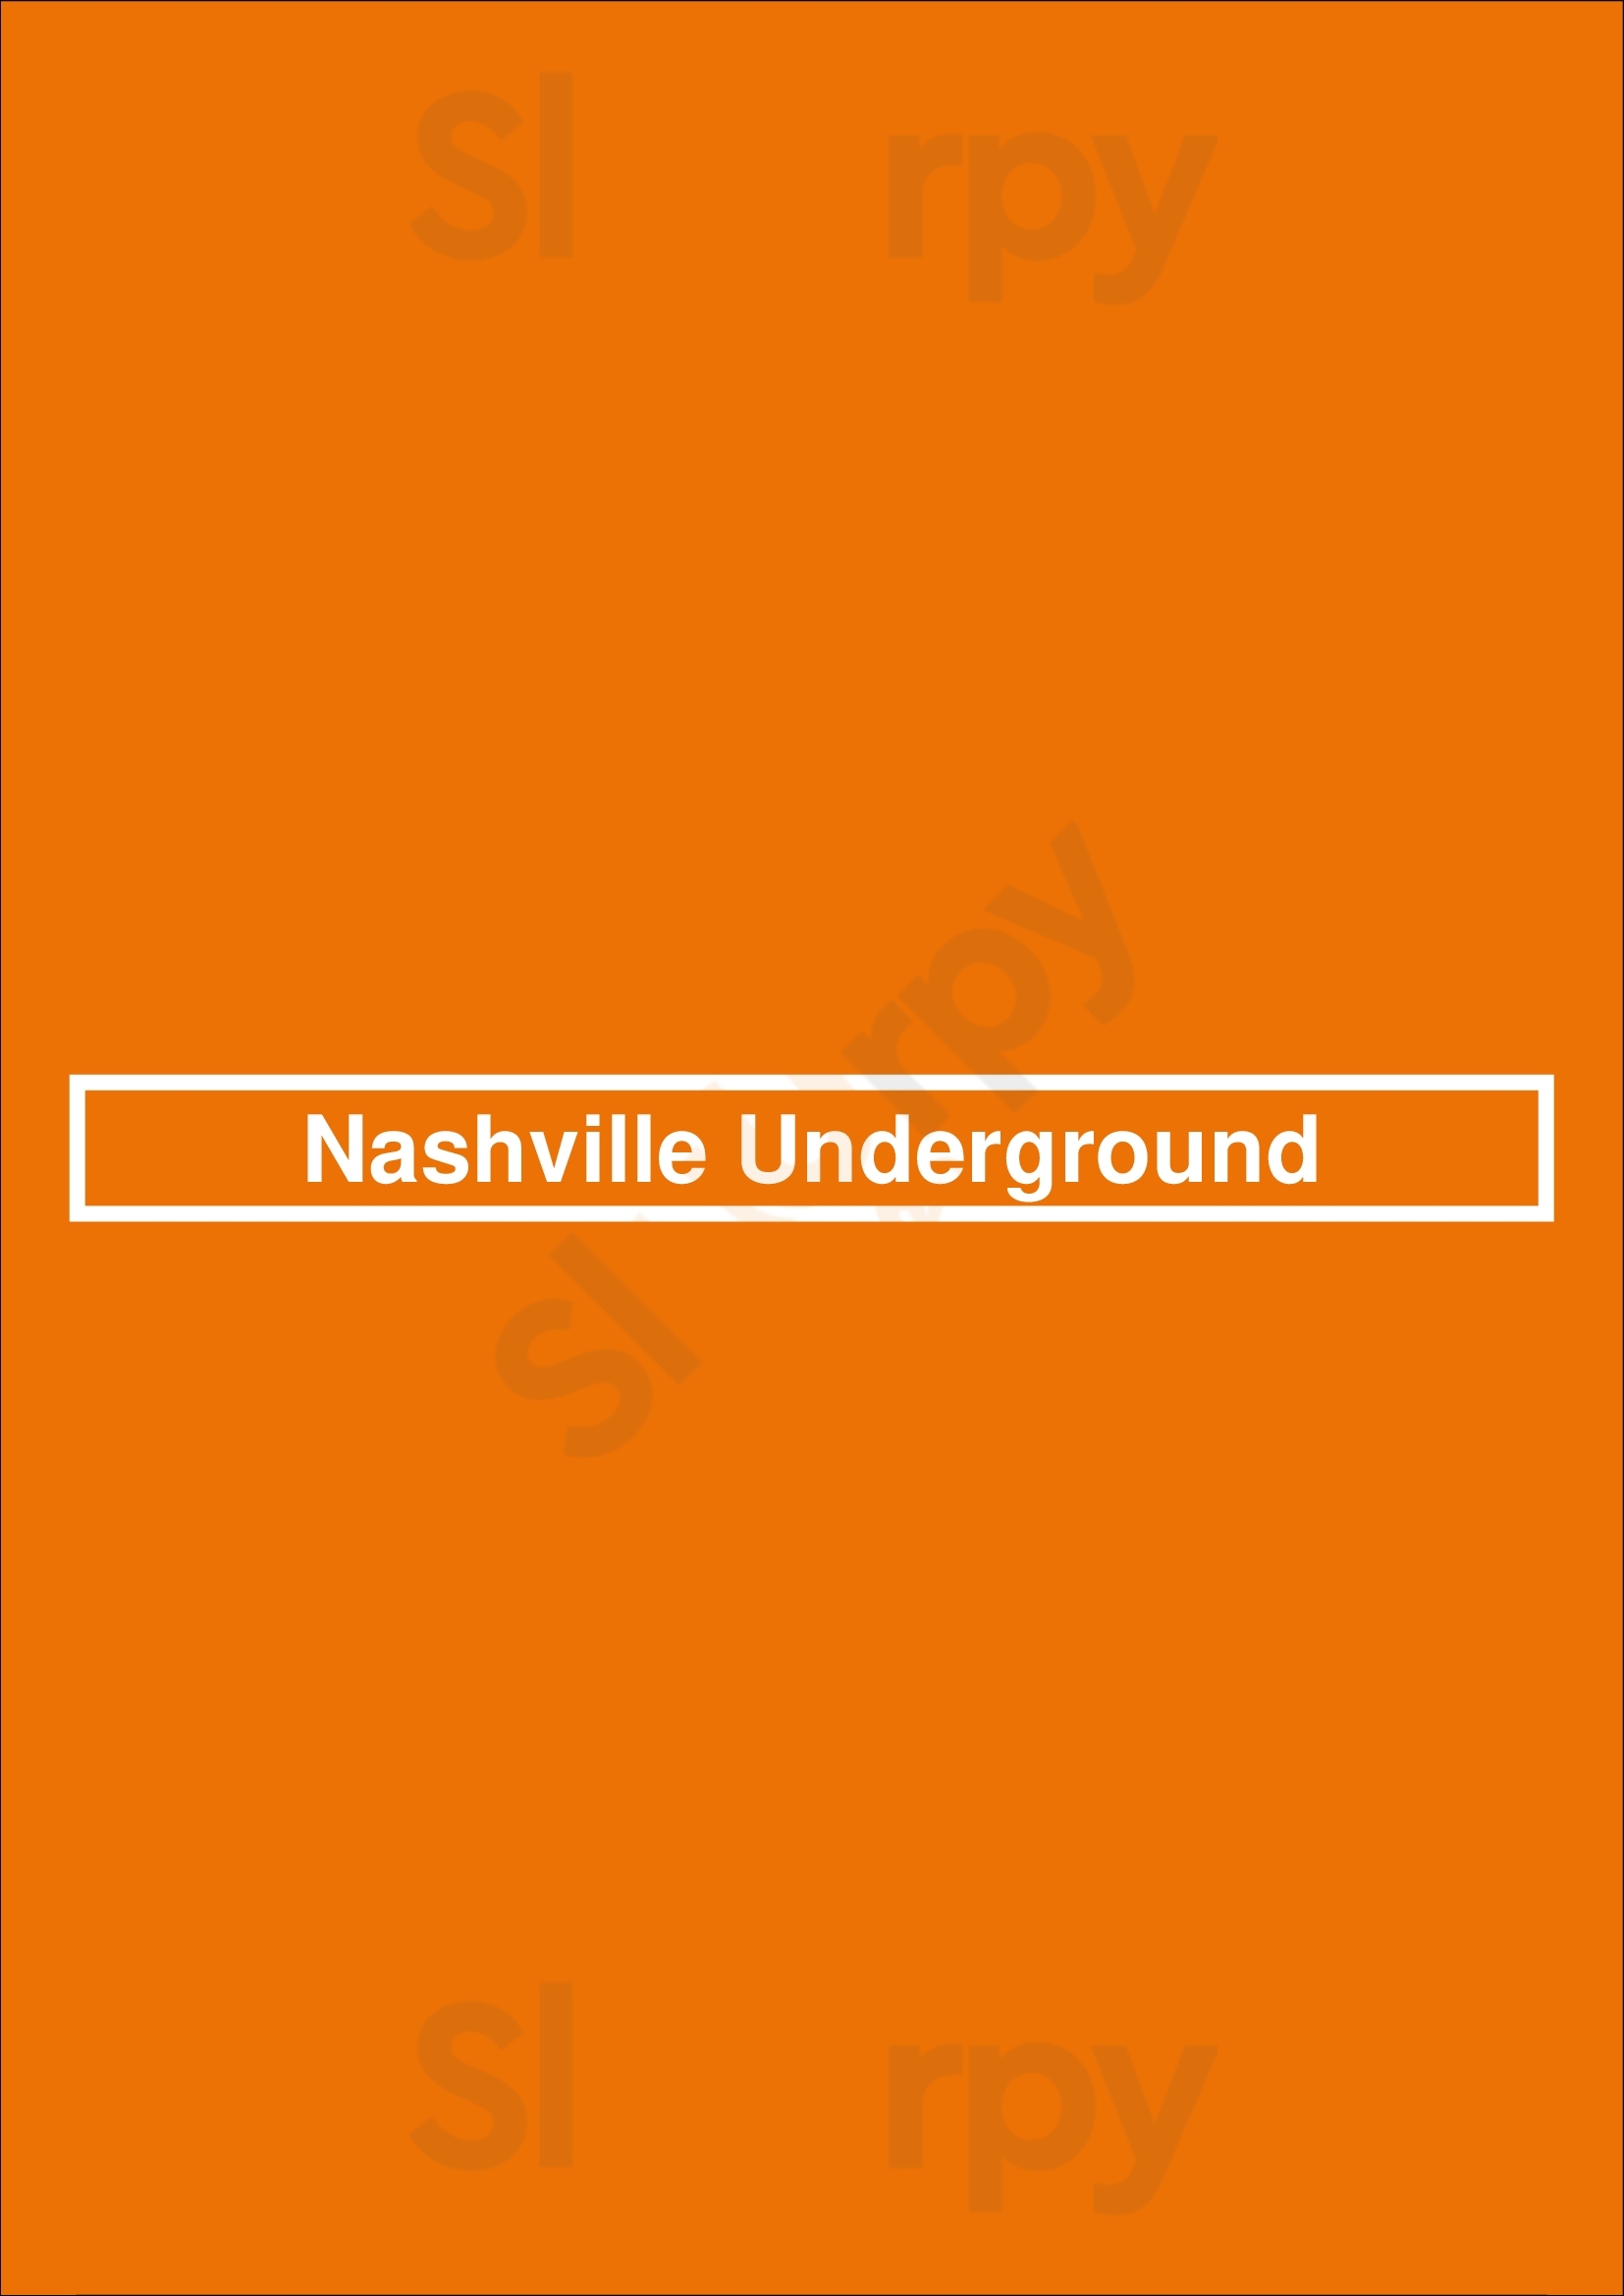 Nashville Underground Nashville Menu - 1